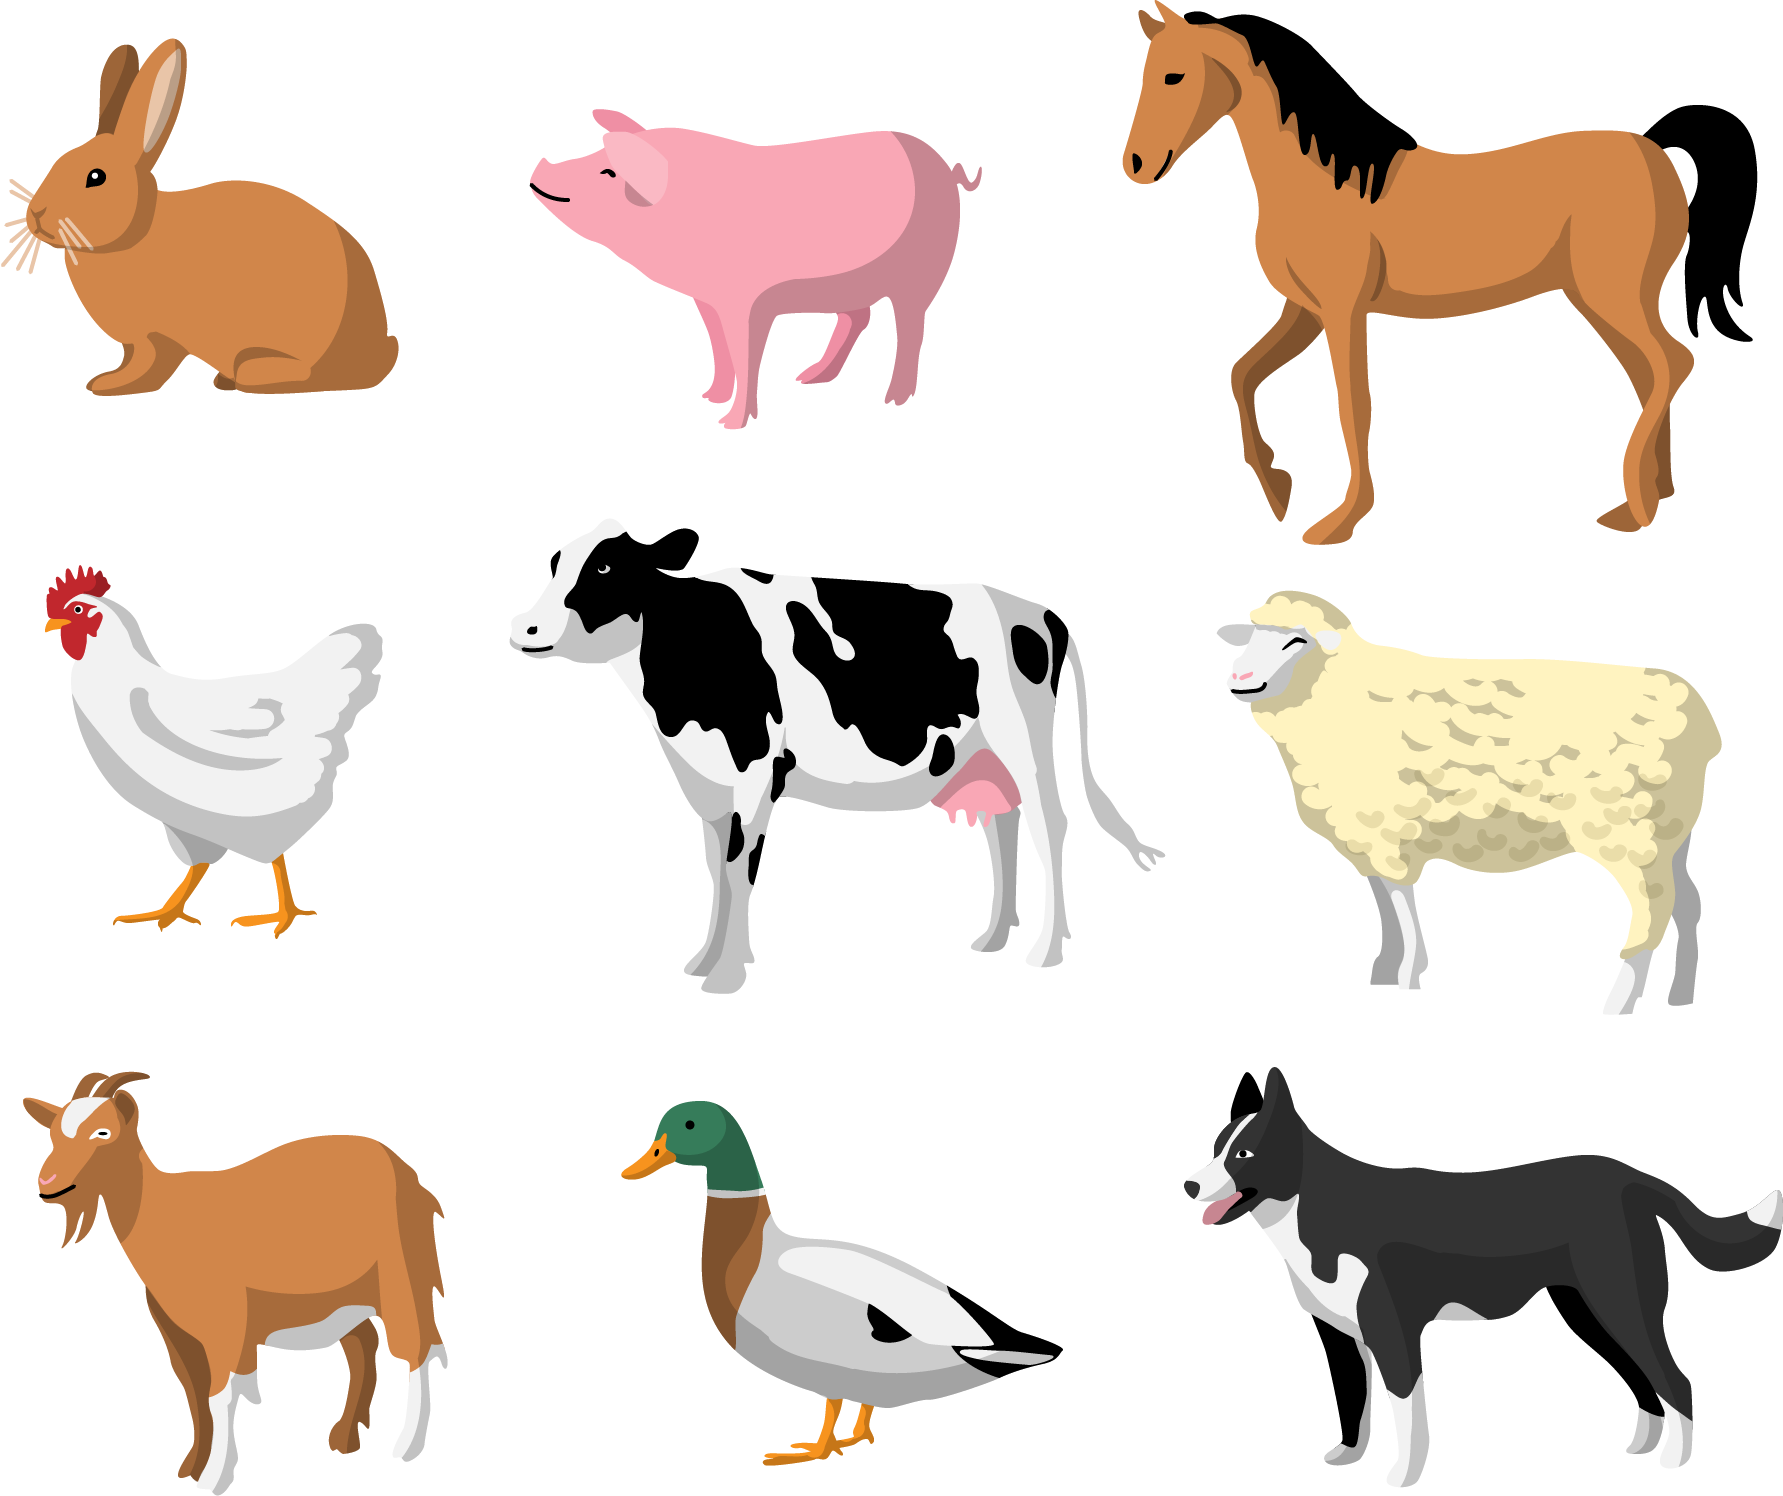 Лошади коровы и куры. Домашние животные для детей. Иллюстрации домашних животных. Изображения домашних животных для детей. Домашние животные мультяшные.